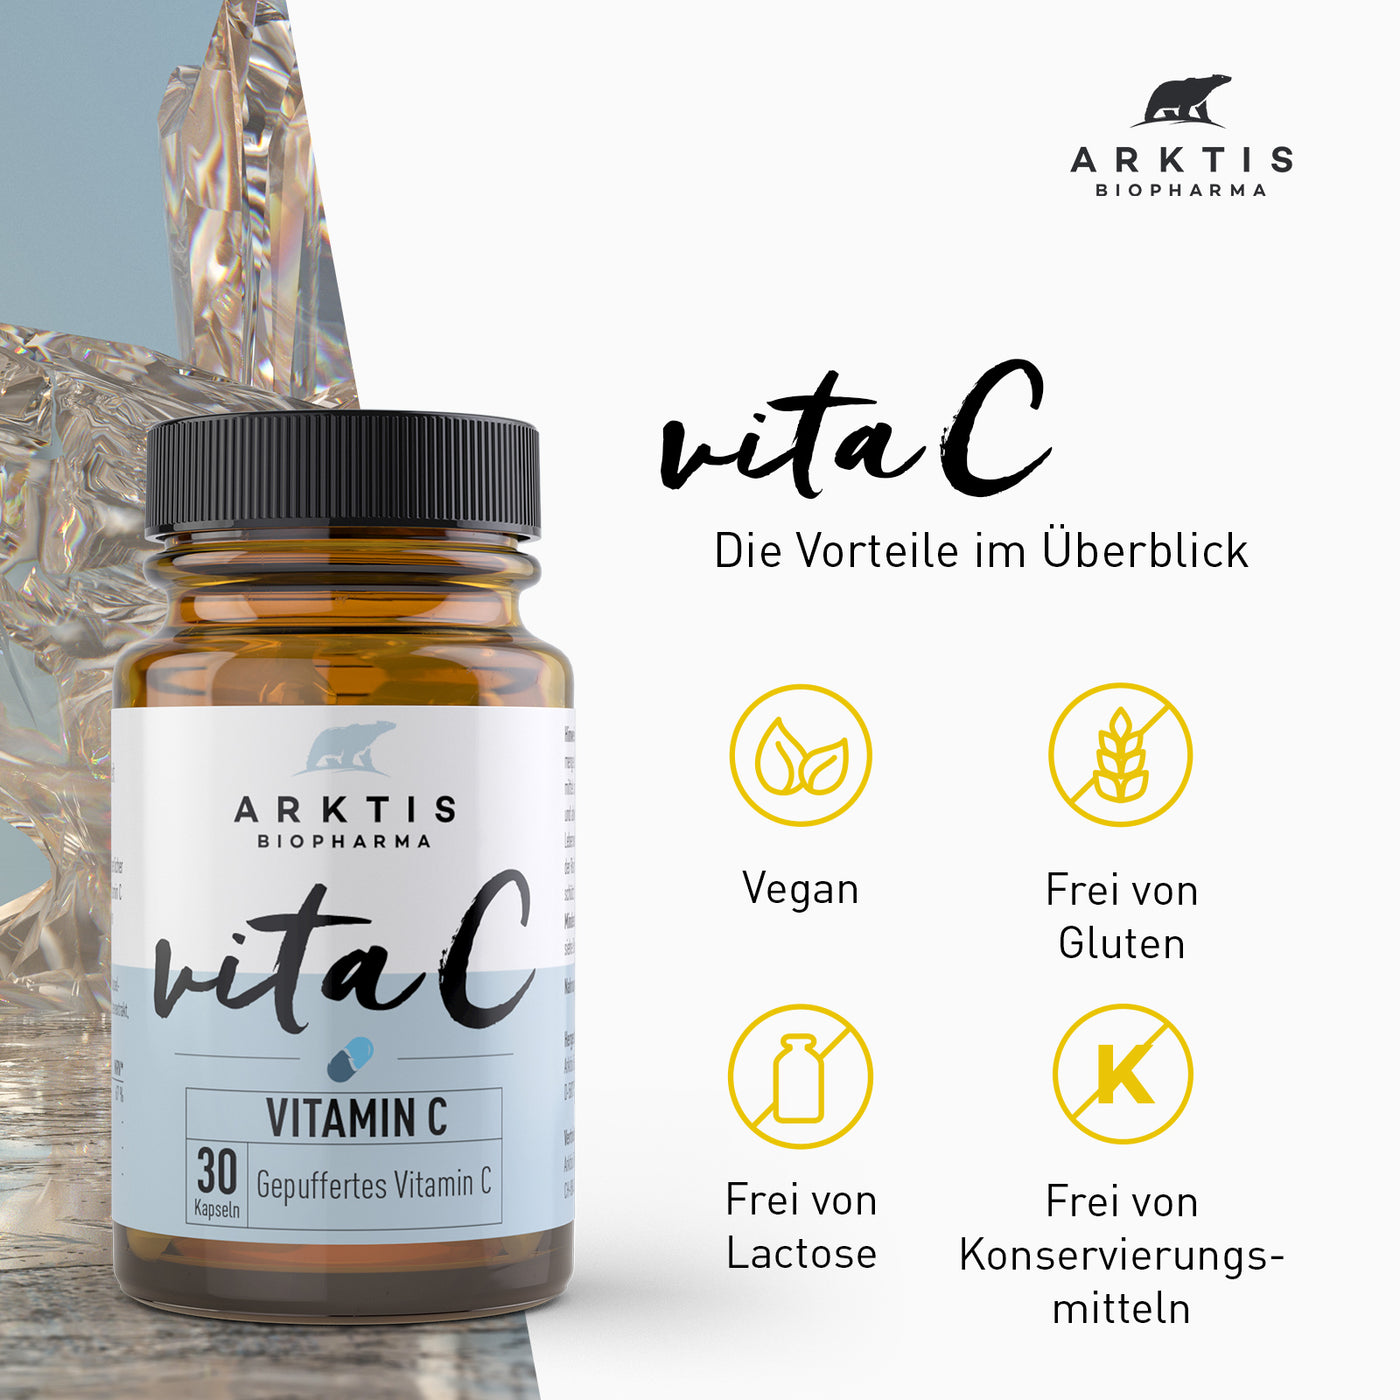 Arktis Vita C - Vitamin C